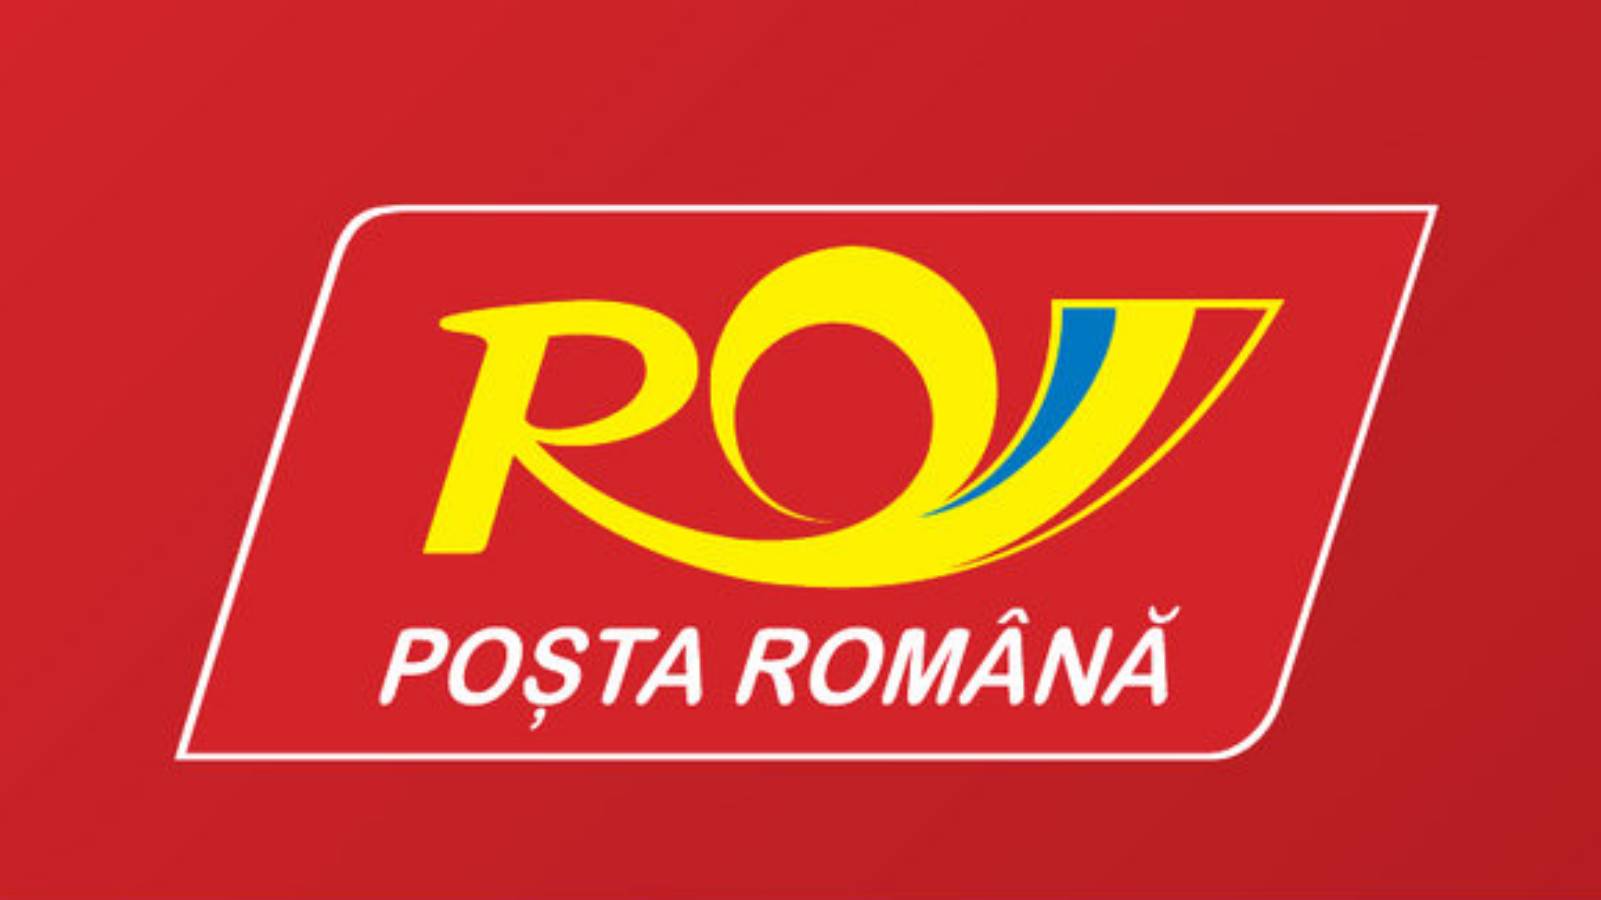 Die rumänische Post bietet in ihren Büros eine Verpackung für alle Sendungen an